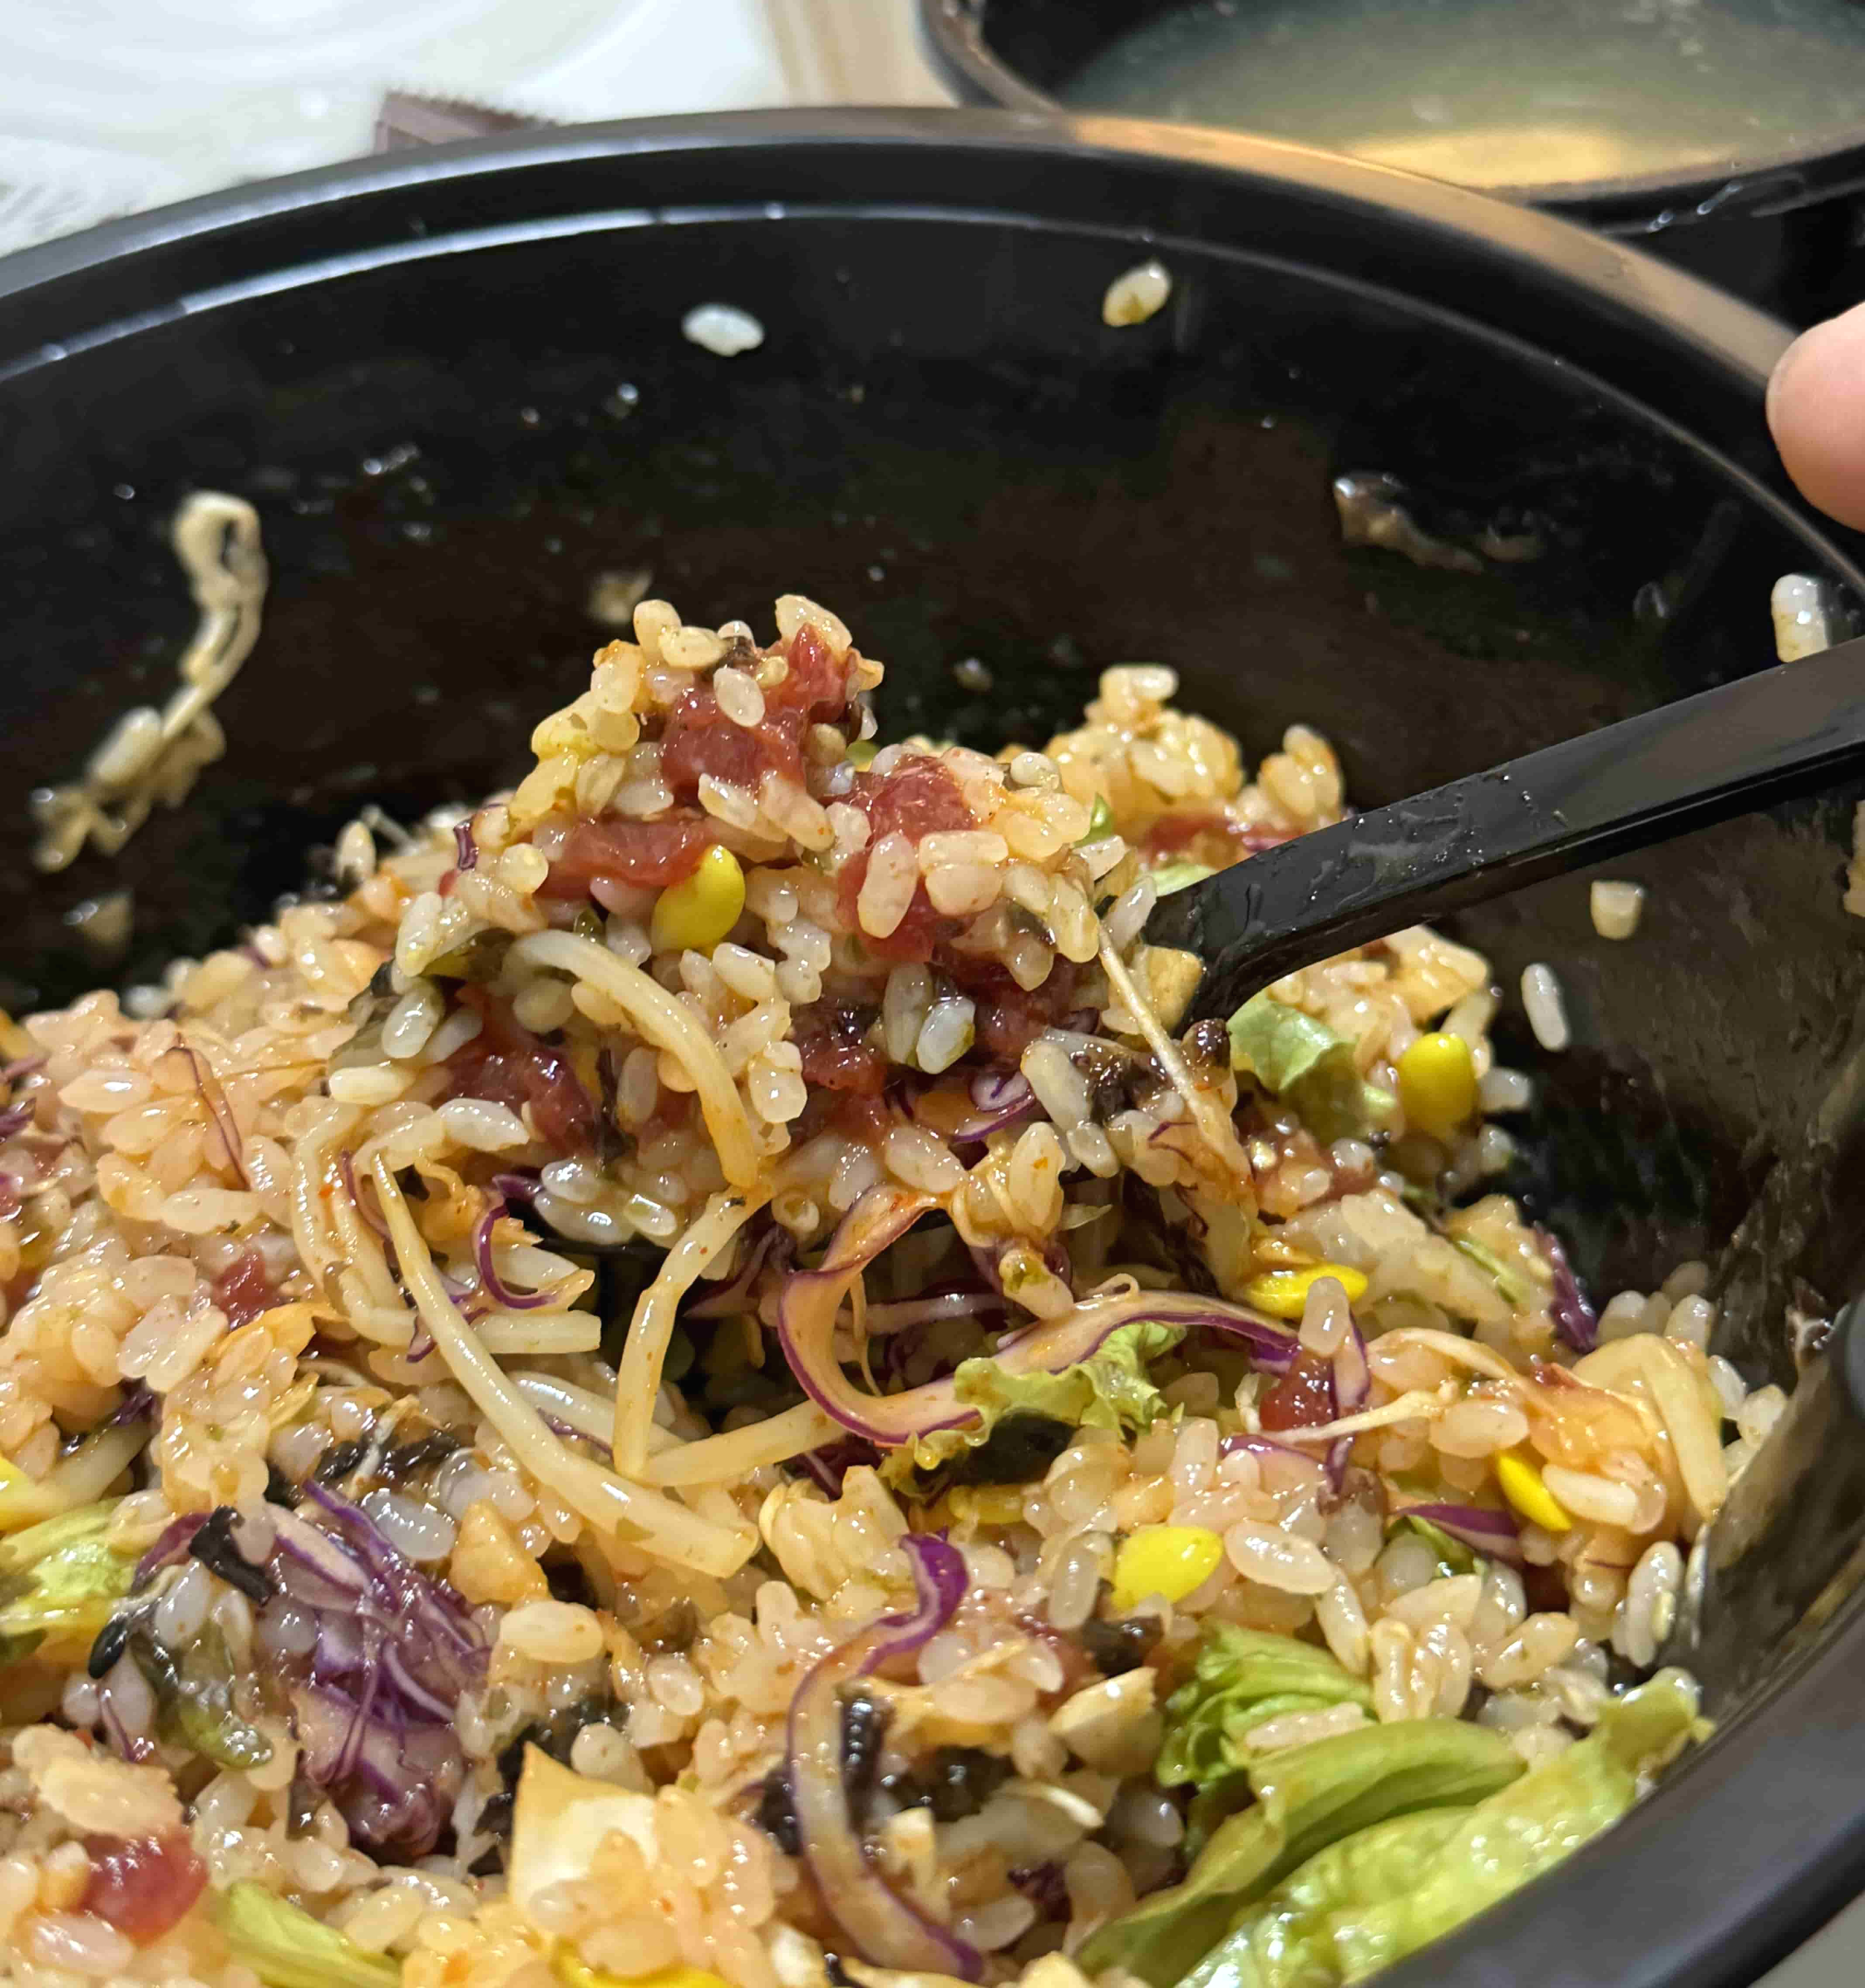 육회비빔밥 숟가락으로 먹는 사진